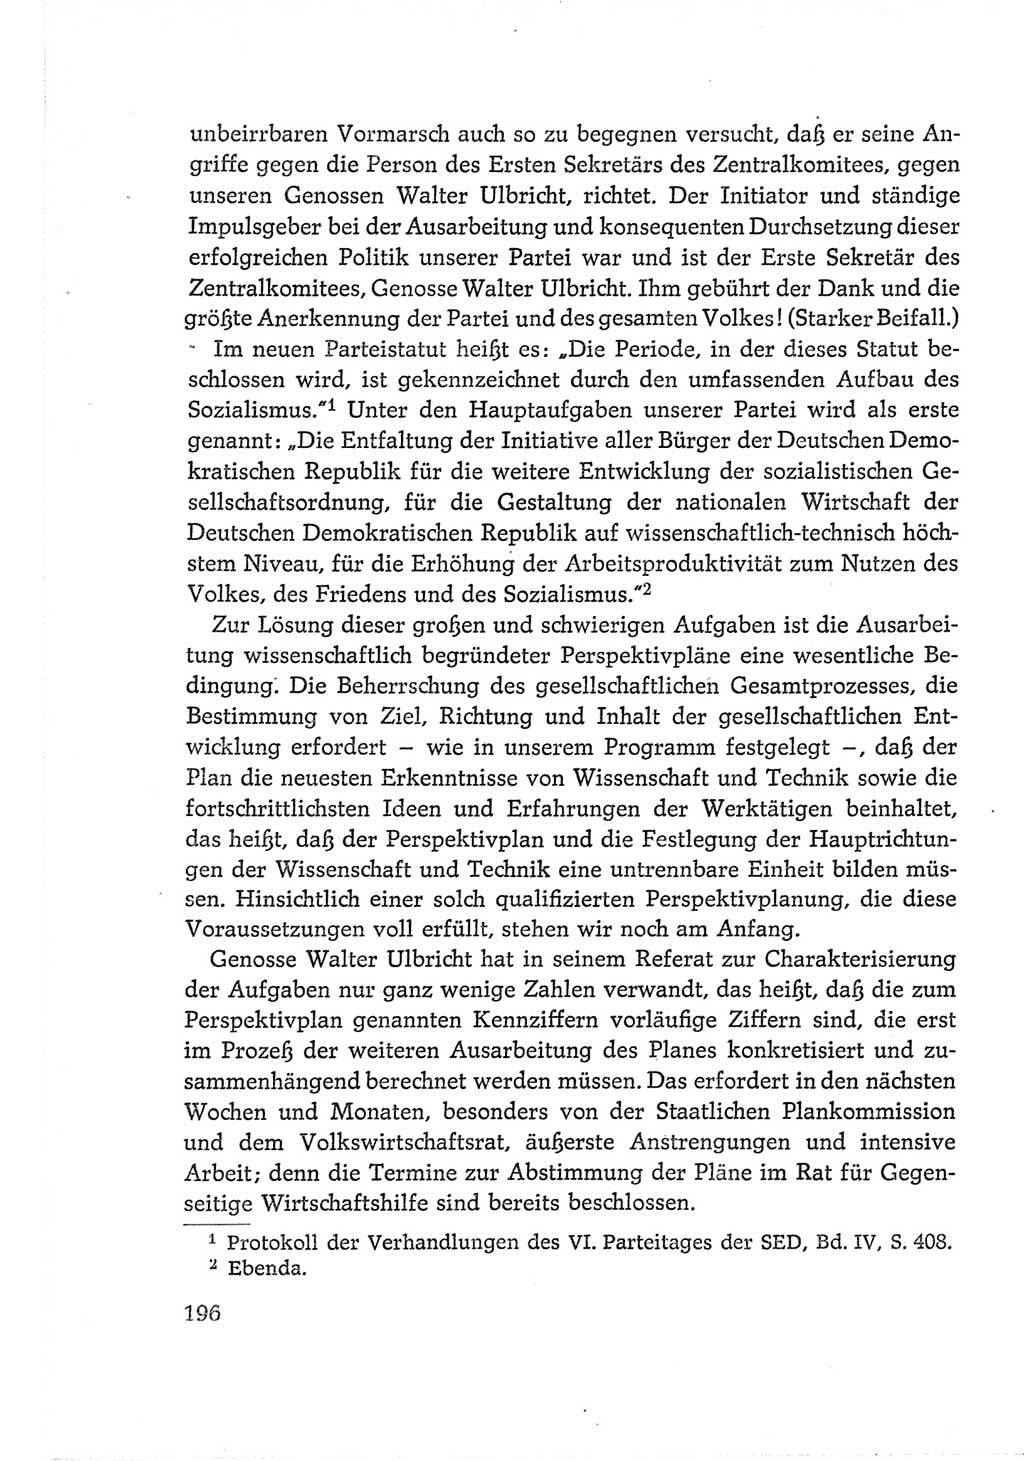 Protokoll der Verhandlungen des Ⅵ. Parteitages der Sozialistischen Einheitspartei Deutschlands (SED) [Deutsche Demokratische Republik (DDR)] 1963, Band Ⅱ, Seite 196 (Prot. Verh. Ⅵ. PT SED DDR 1963, Bd. Ⅱ, S. 196)